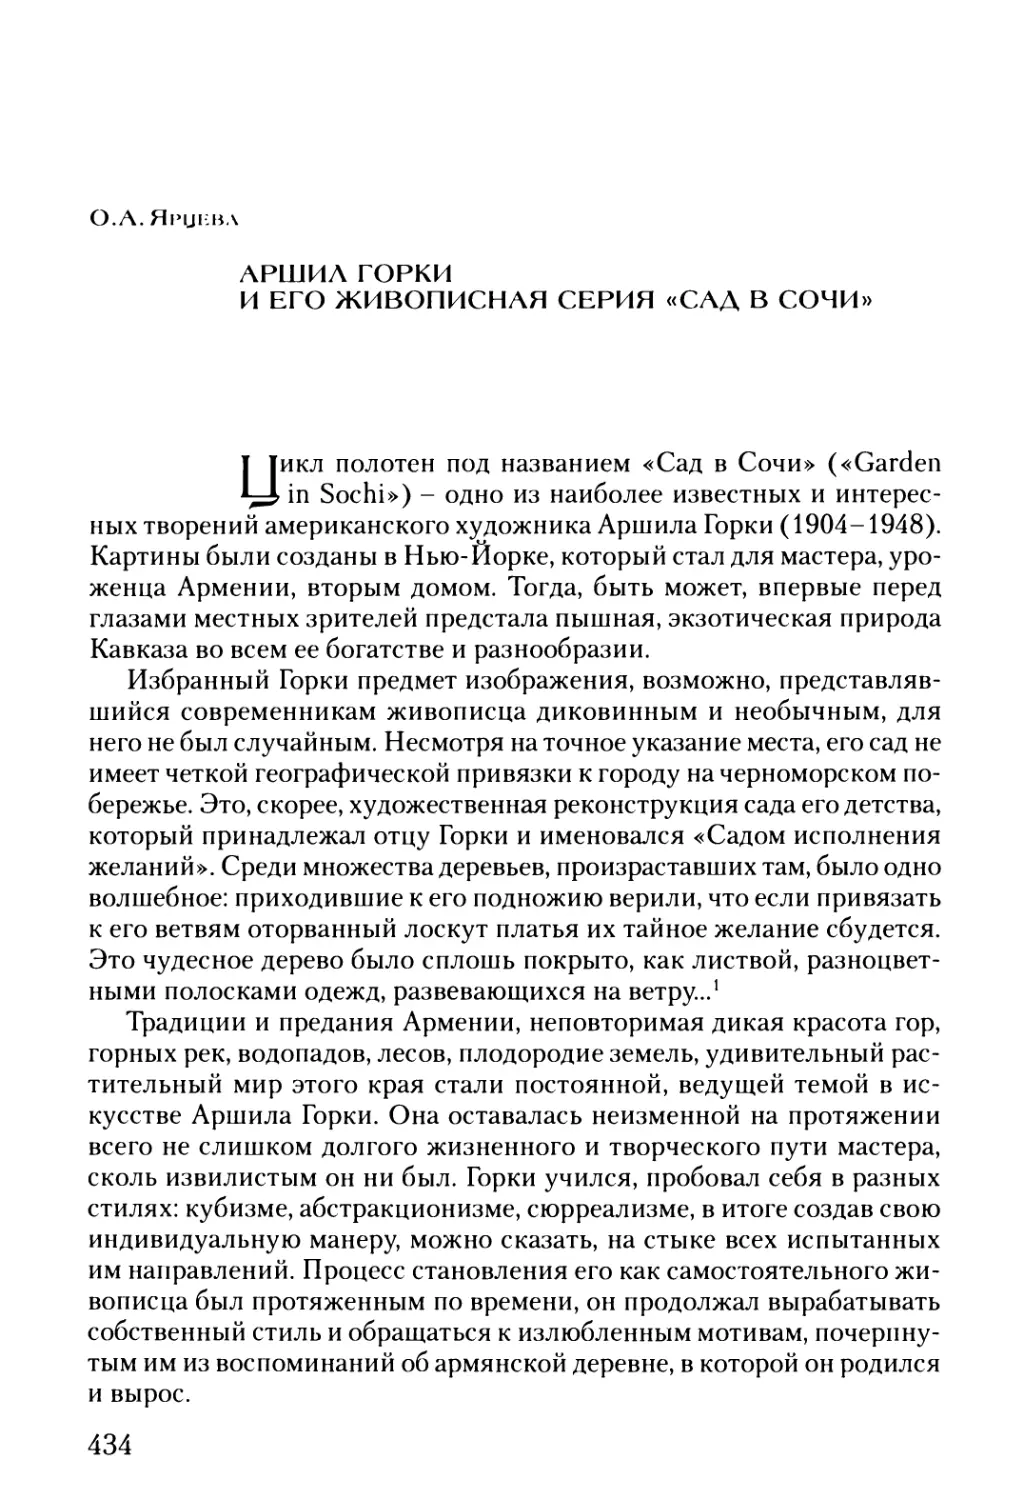 Ярцева O.A. Аршил Горки и его живописная серия «Сад в Сочи»